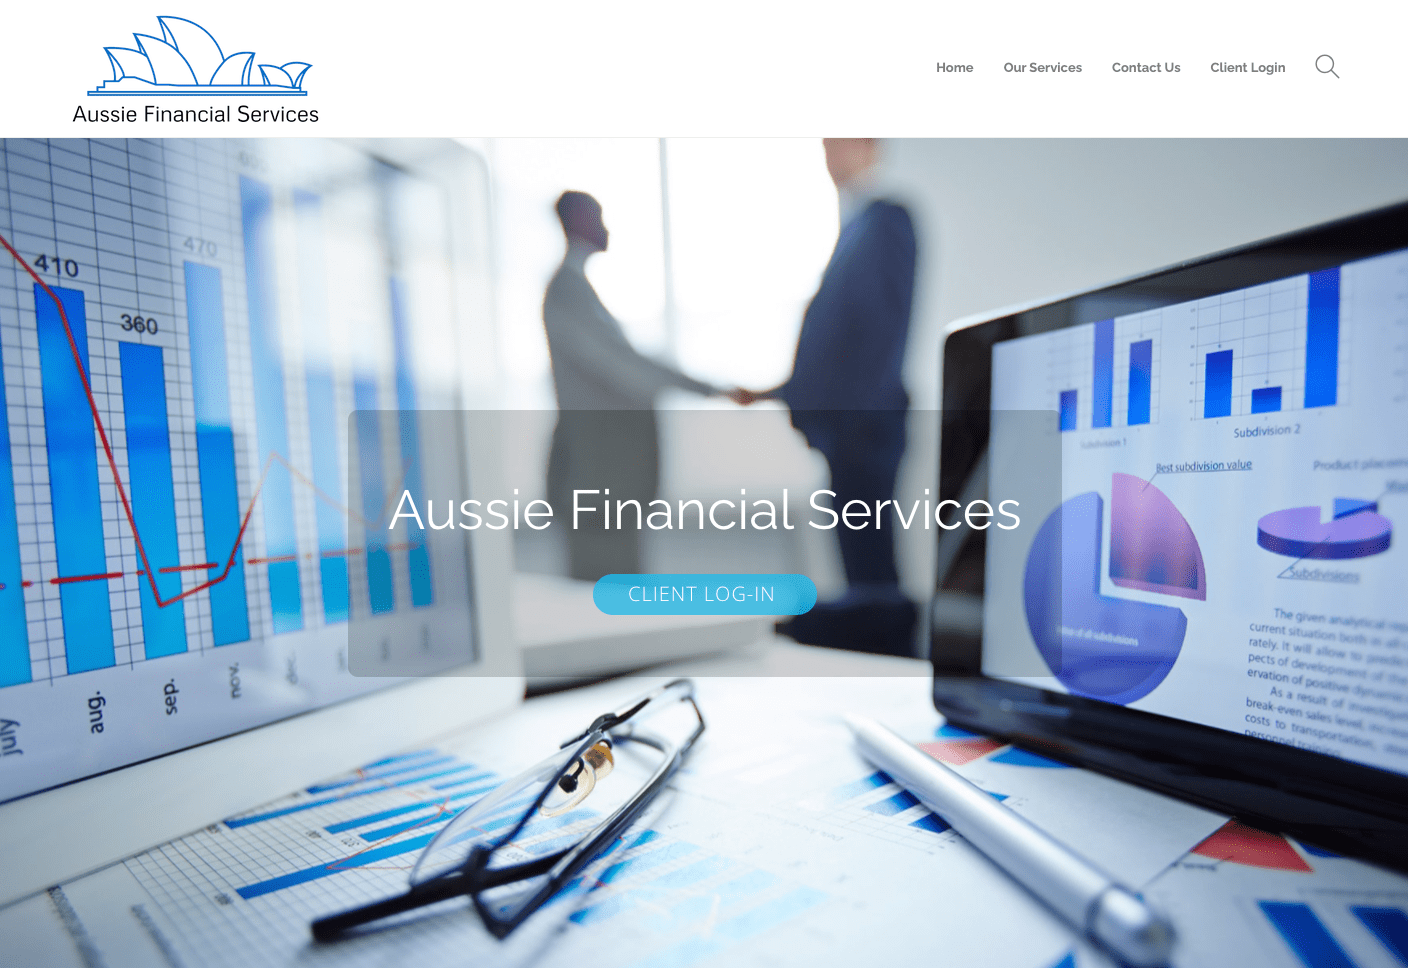 Aussie Financial Services website image.